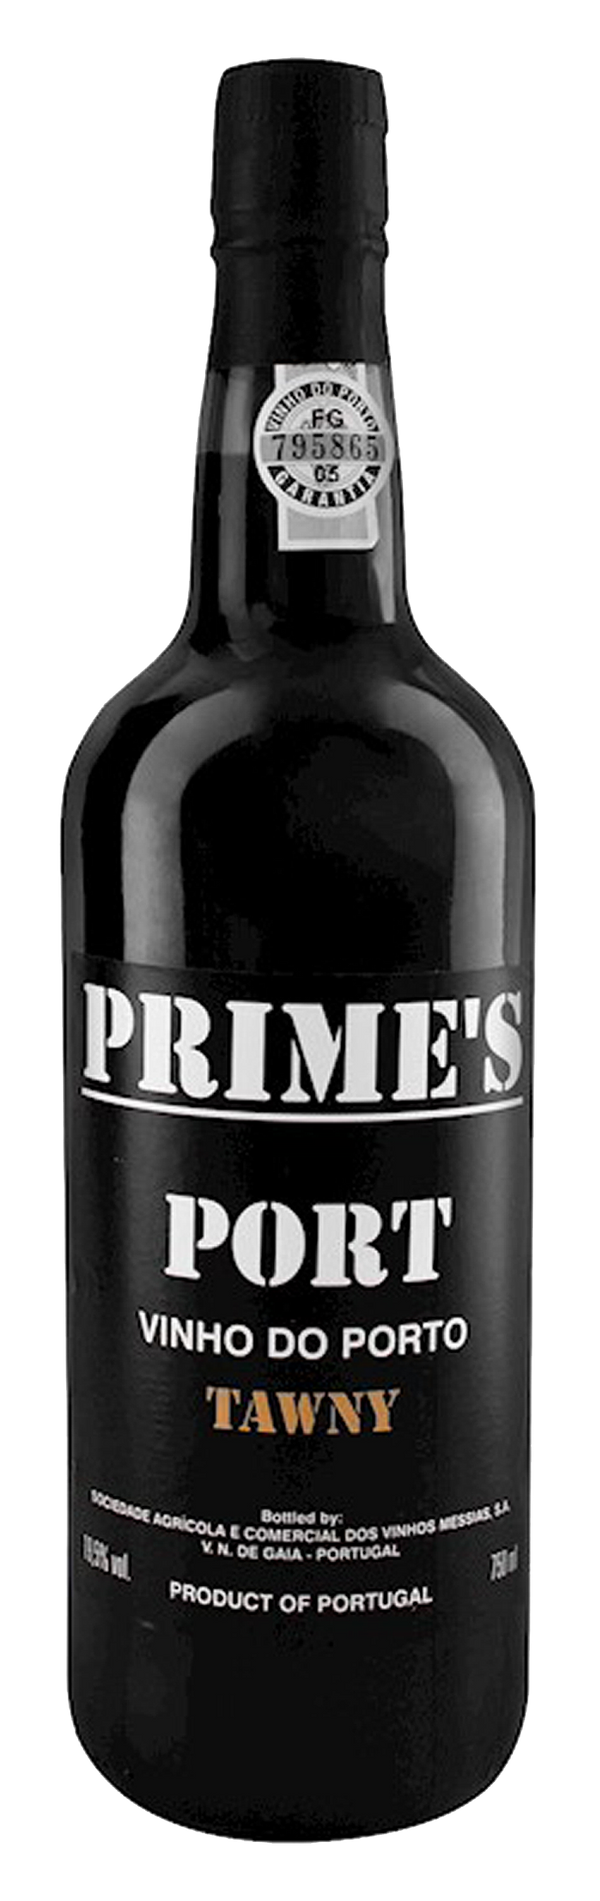 Prime's Tawny Port NV